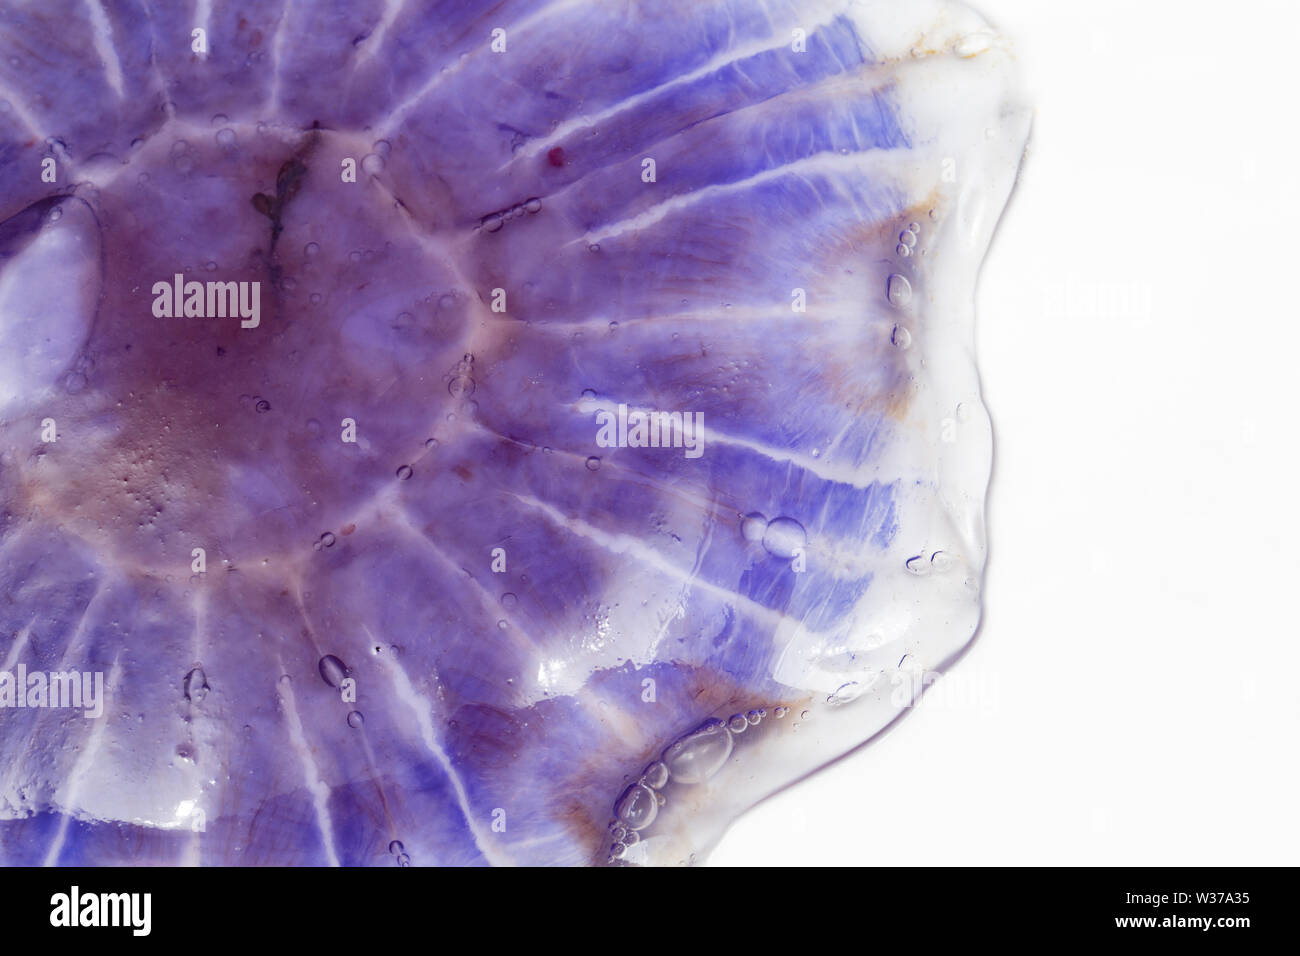 Une méduse bleue, Cyanea lamarckii, trouvés échoués sur la plage de Chesil dans le Dorset et photographié sur un fond blanc. Dorset England UK GO Banque D'Images